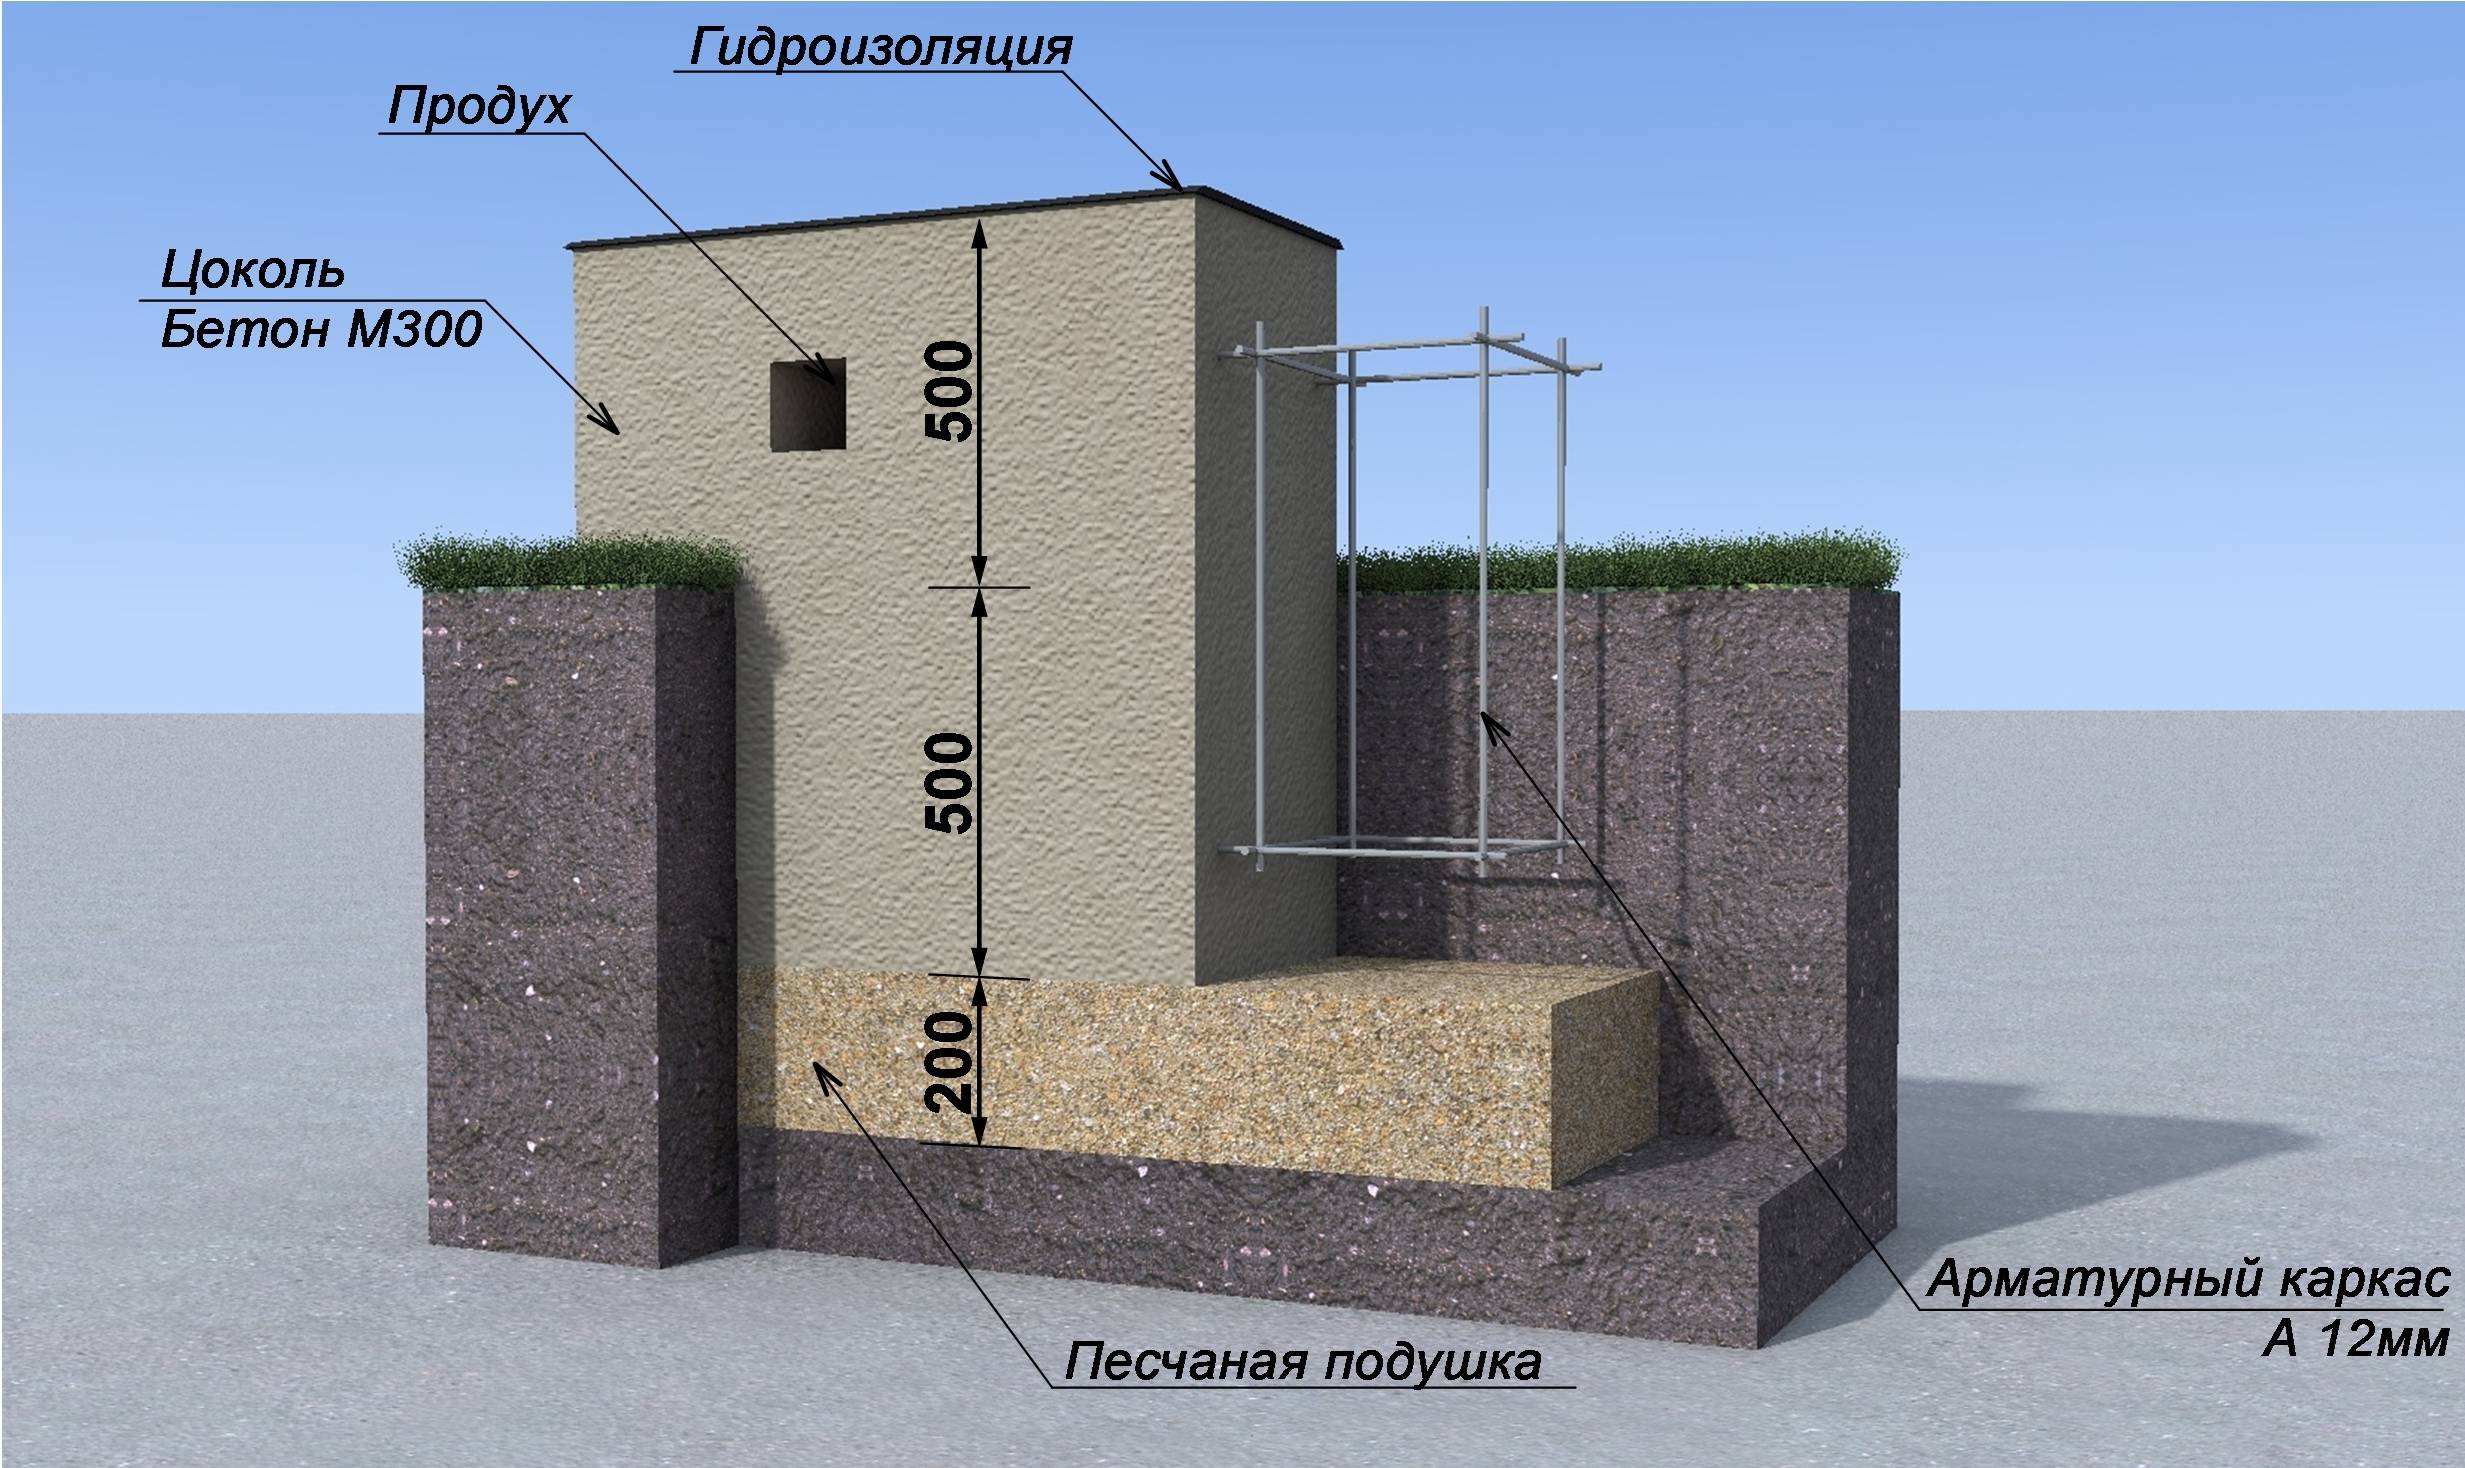 Как изготавливается фундамент для двухэтажного дома?